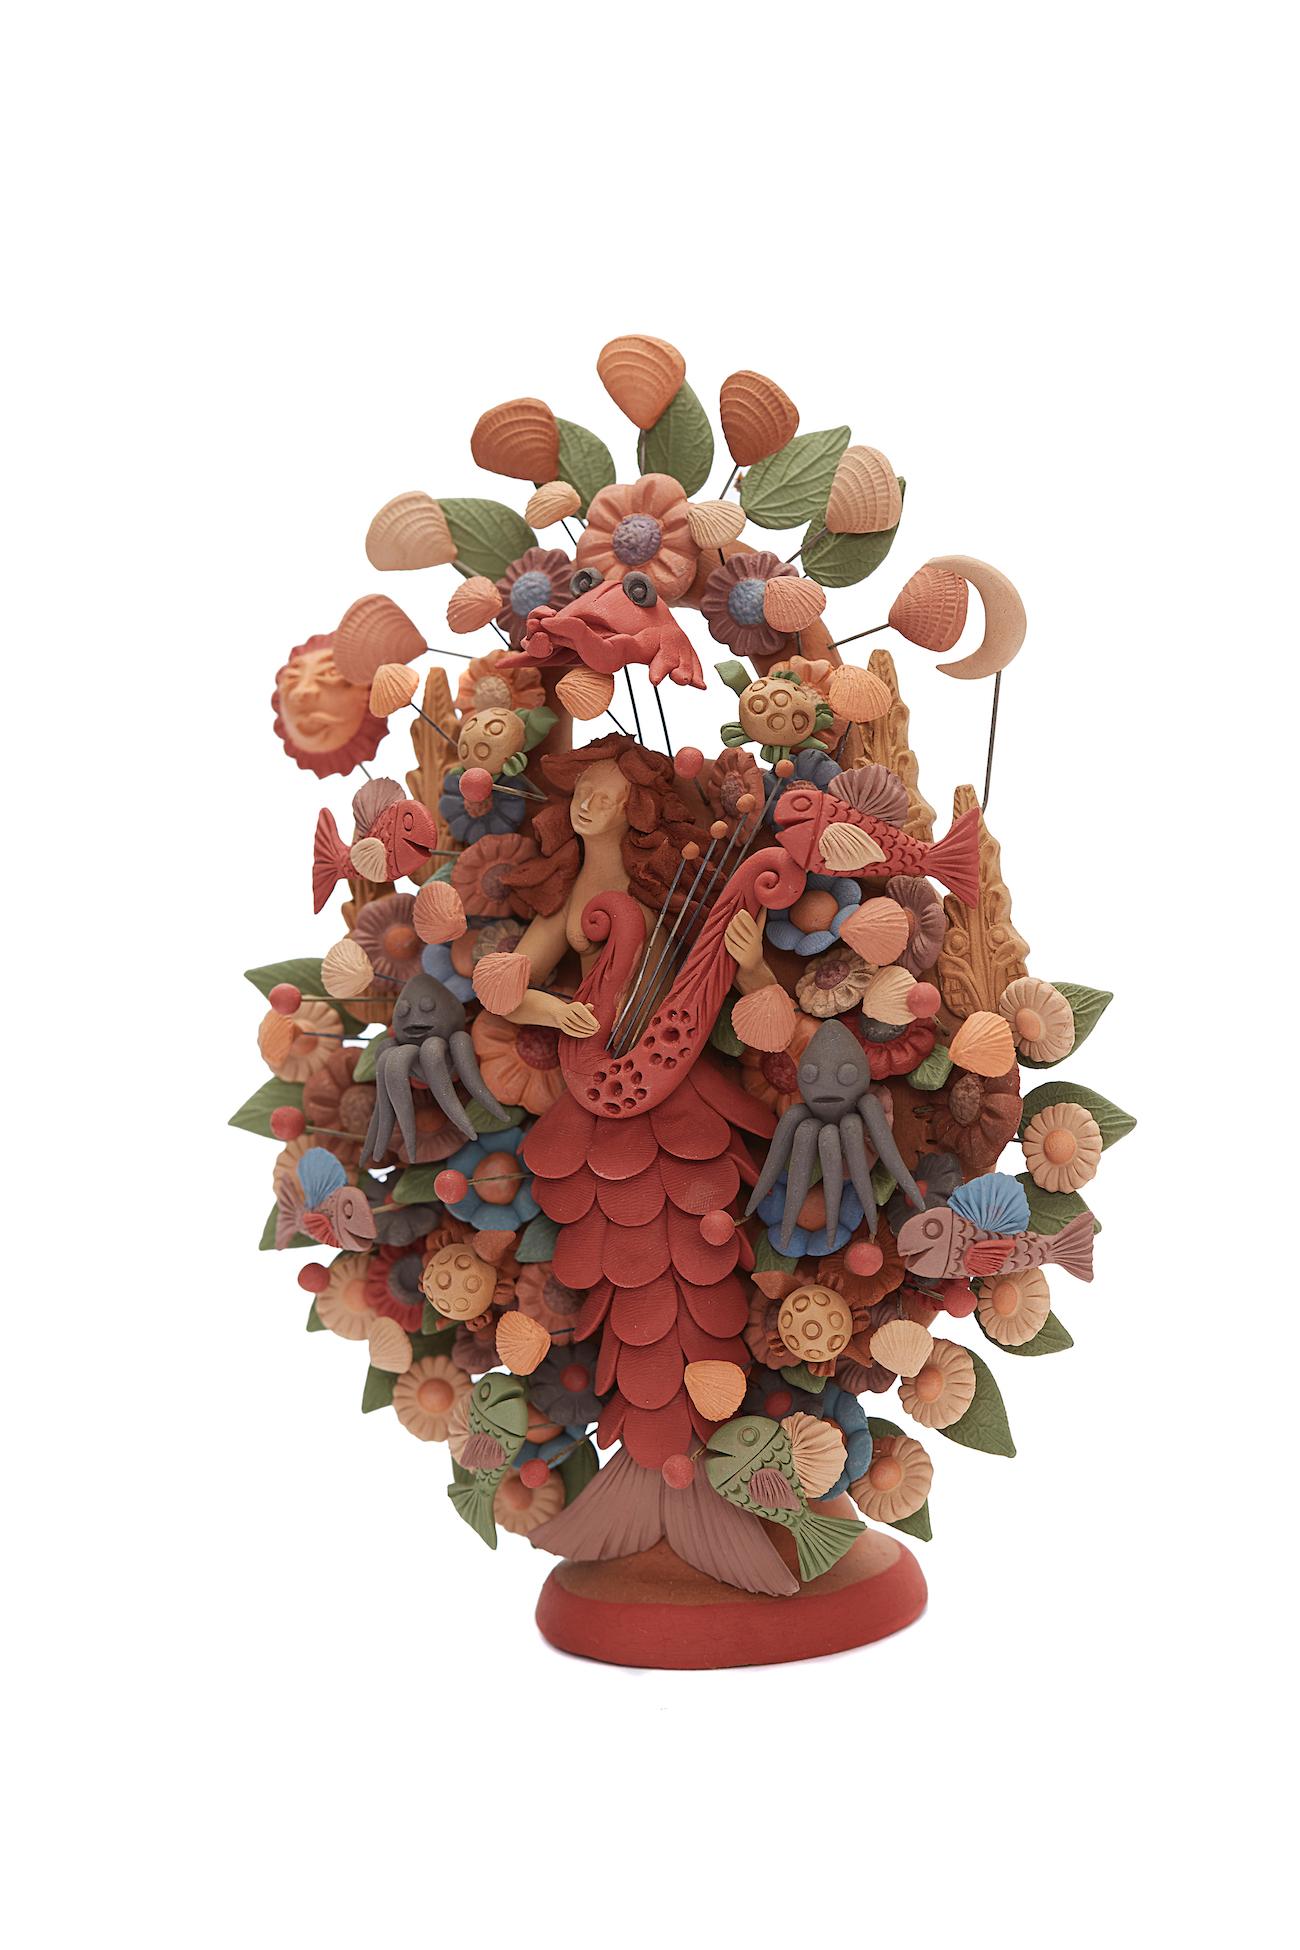 Arbol Sirena - Marmaid Tree / Ceramics Mexican Folk Art Clay - Sculpture by Cecilio Sanchez Fierro